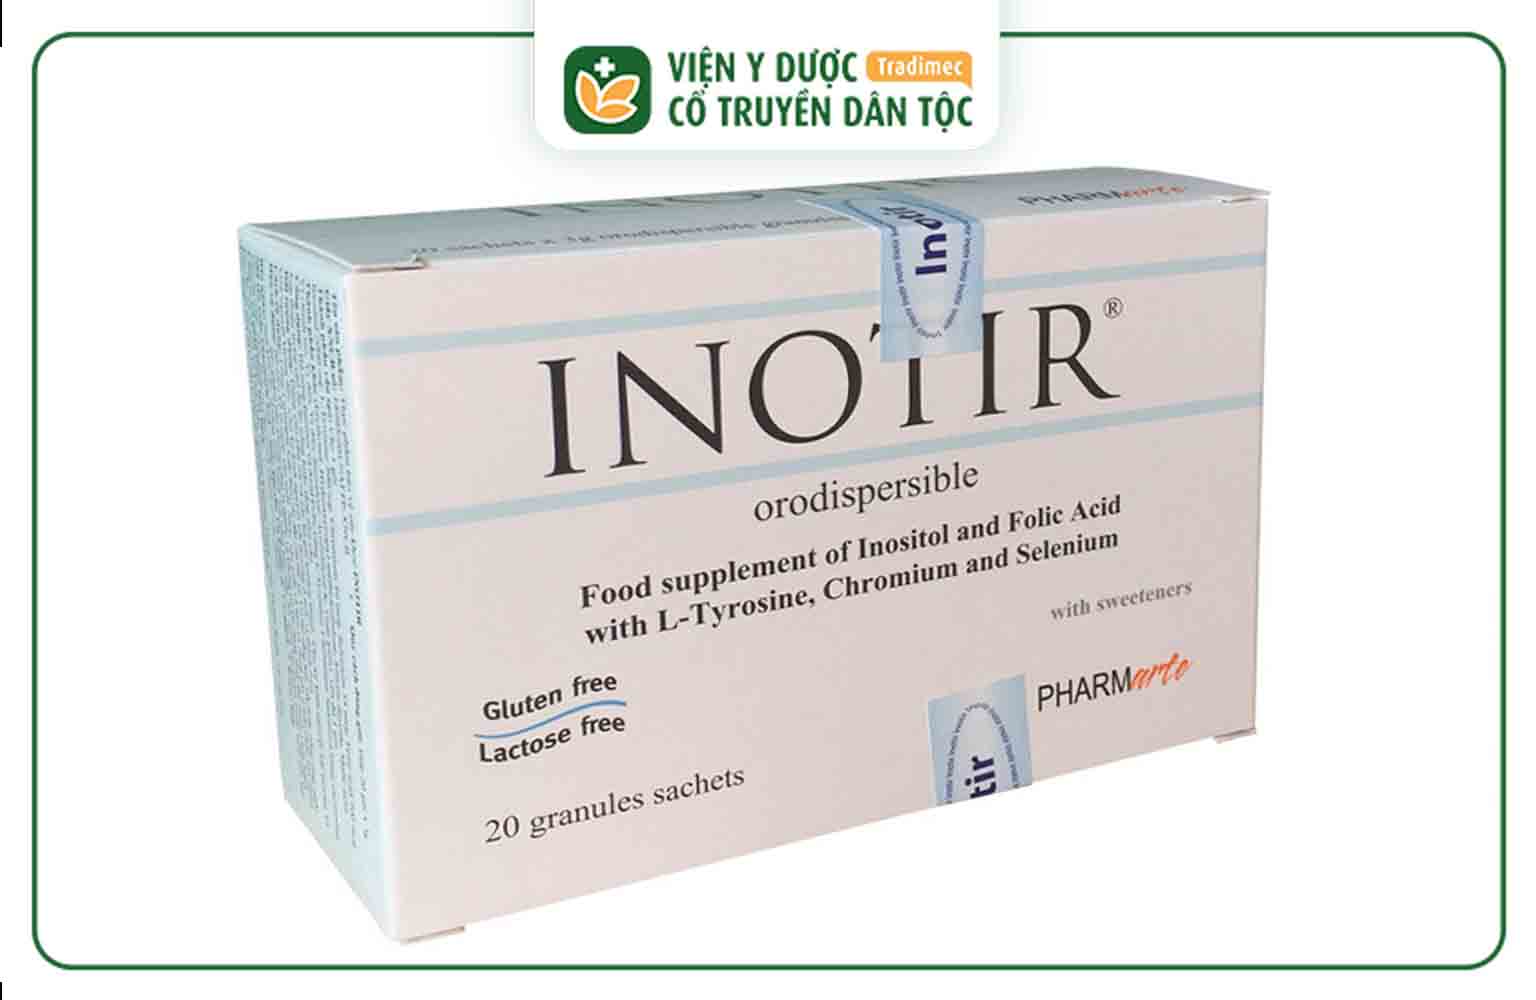 Inotir là thực phẩm chức năng giúp hỗ trợ điều trị đa nang buồng trứng